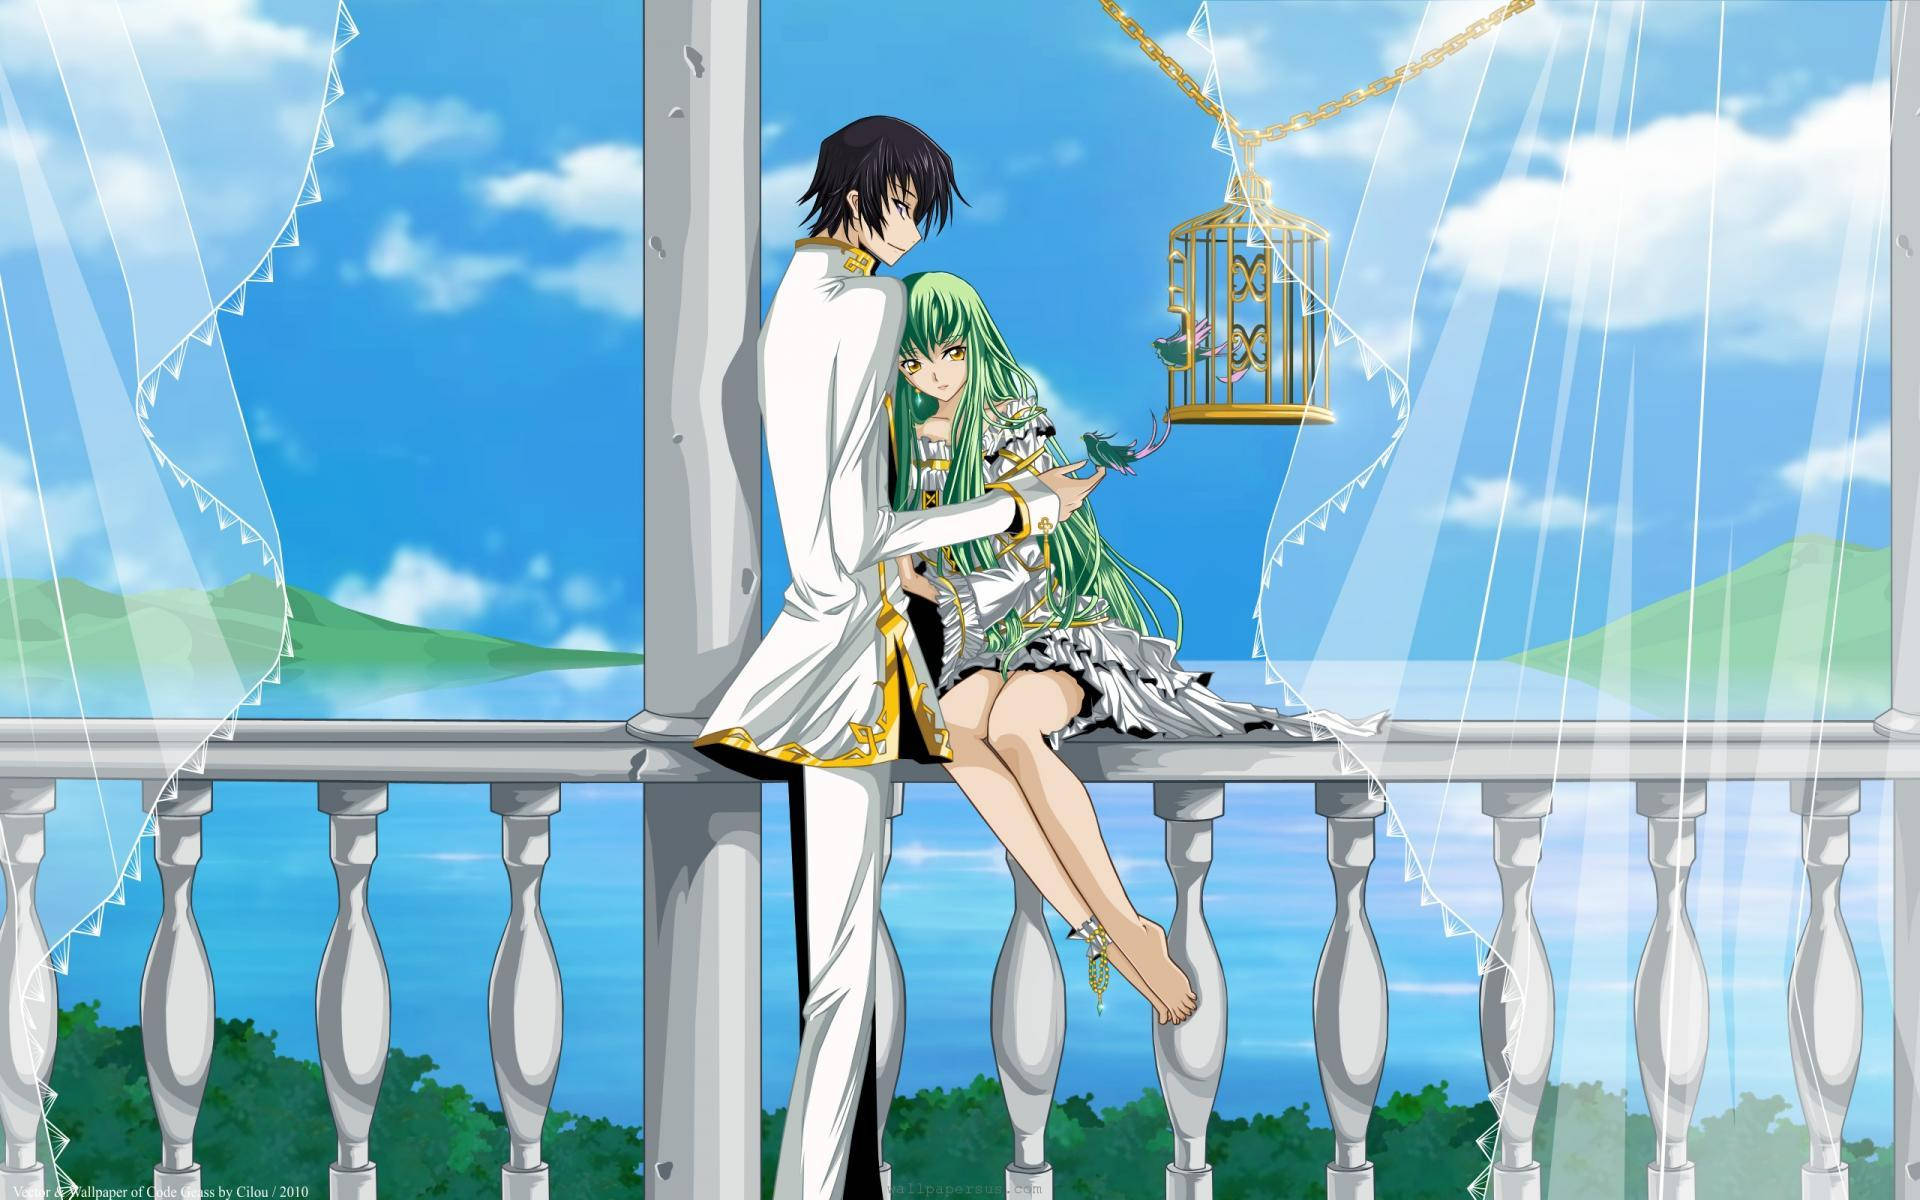 Immagini Romantiche Di Anime